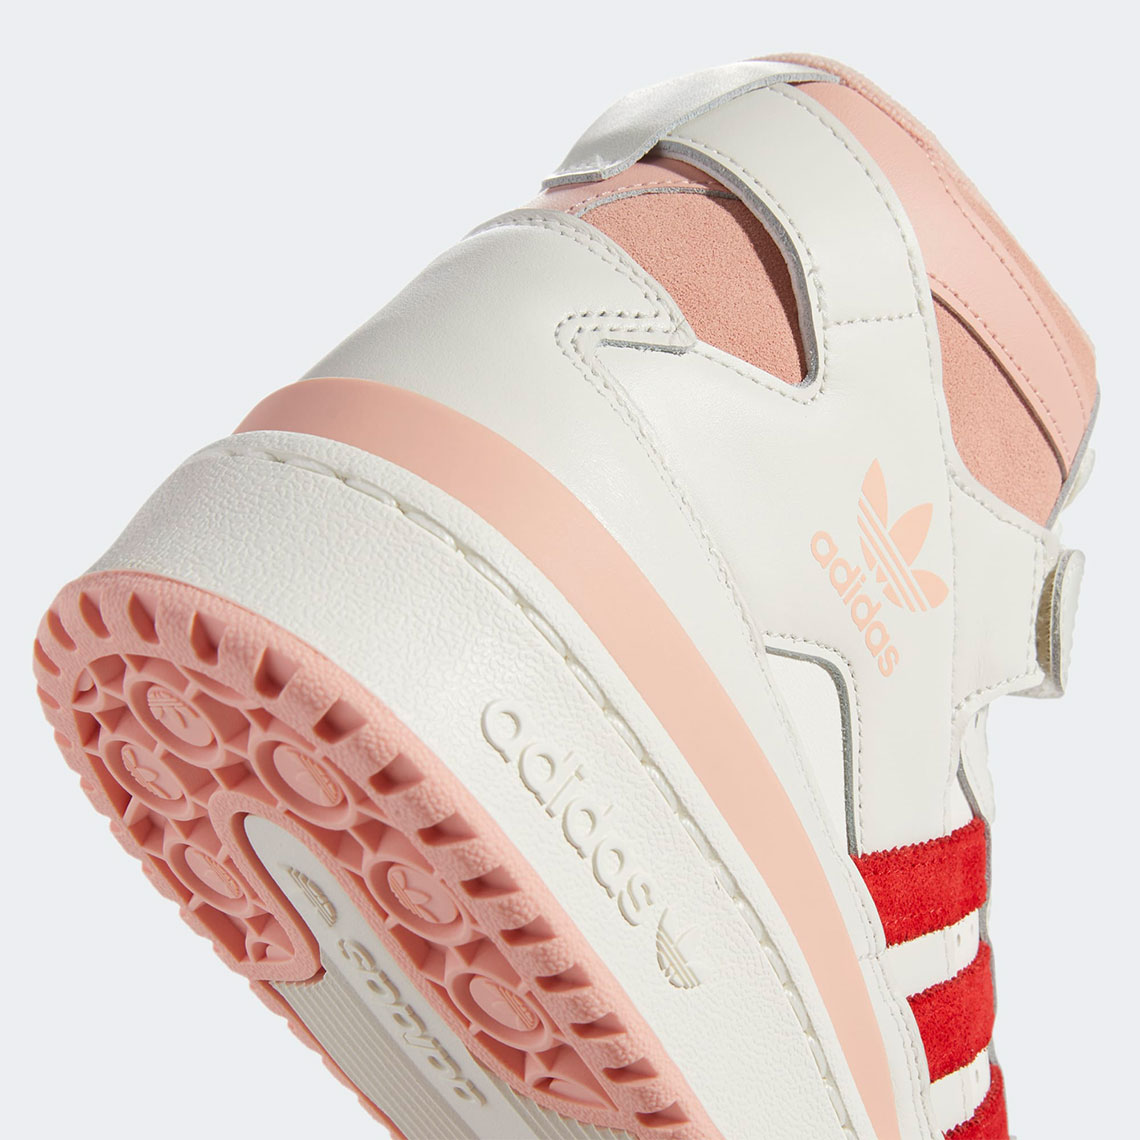 adidas-forum-84-hi-off-white-pink-glow-vivid-red-H01670-7.jpg